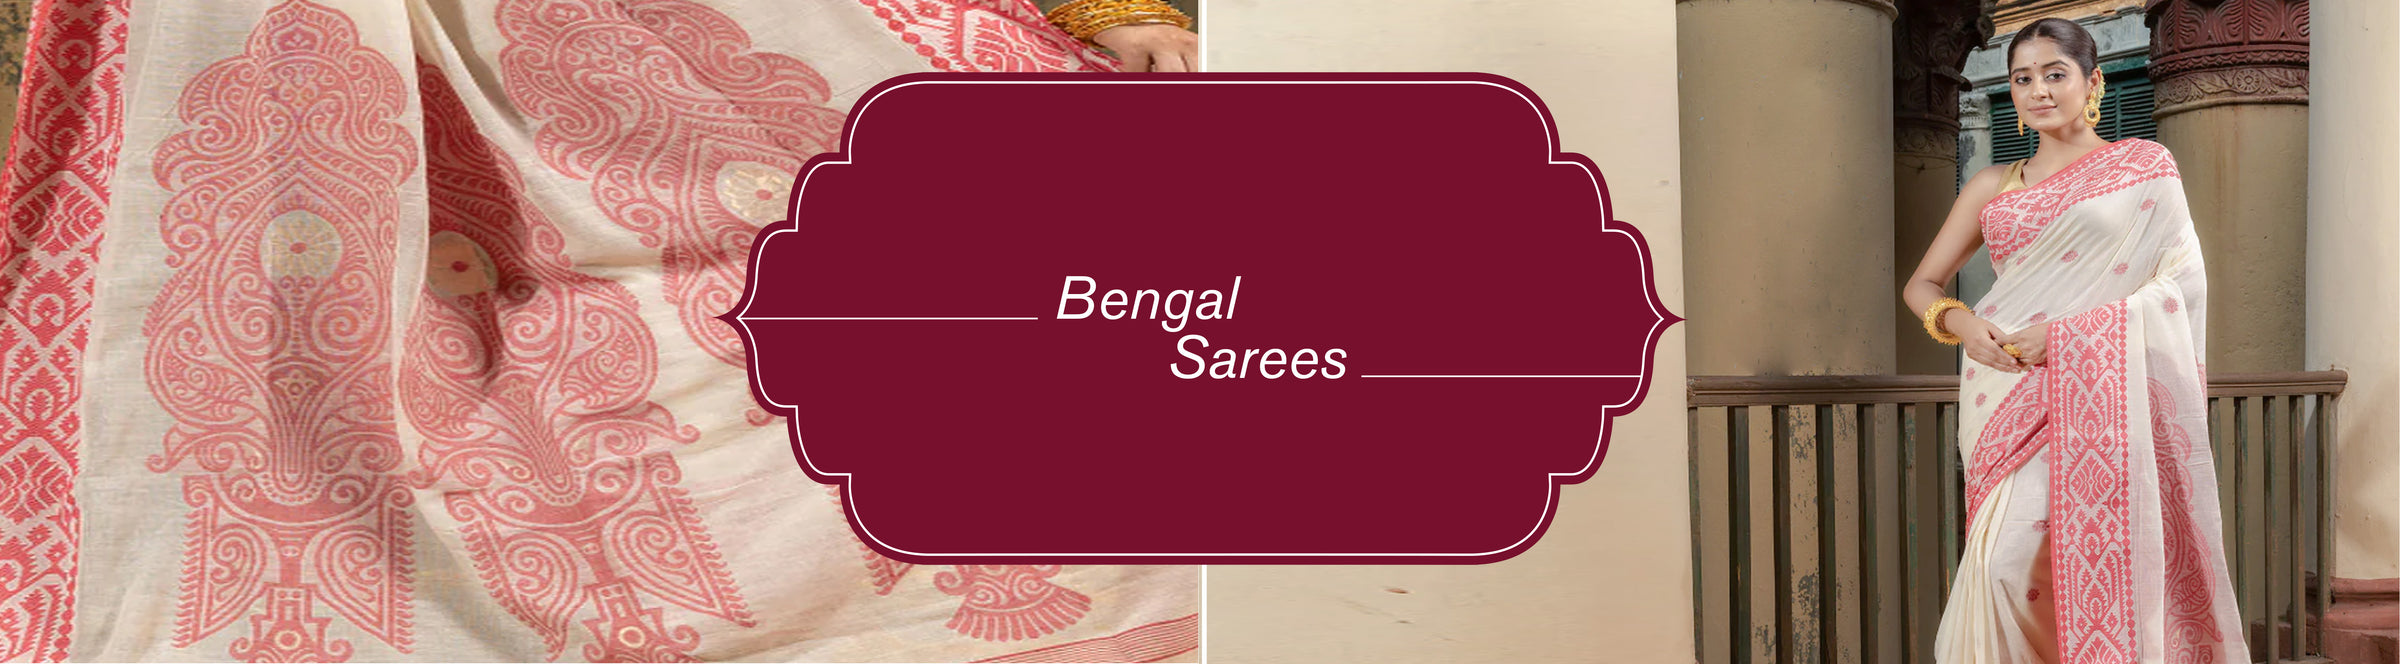 Bengal Sarees